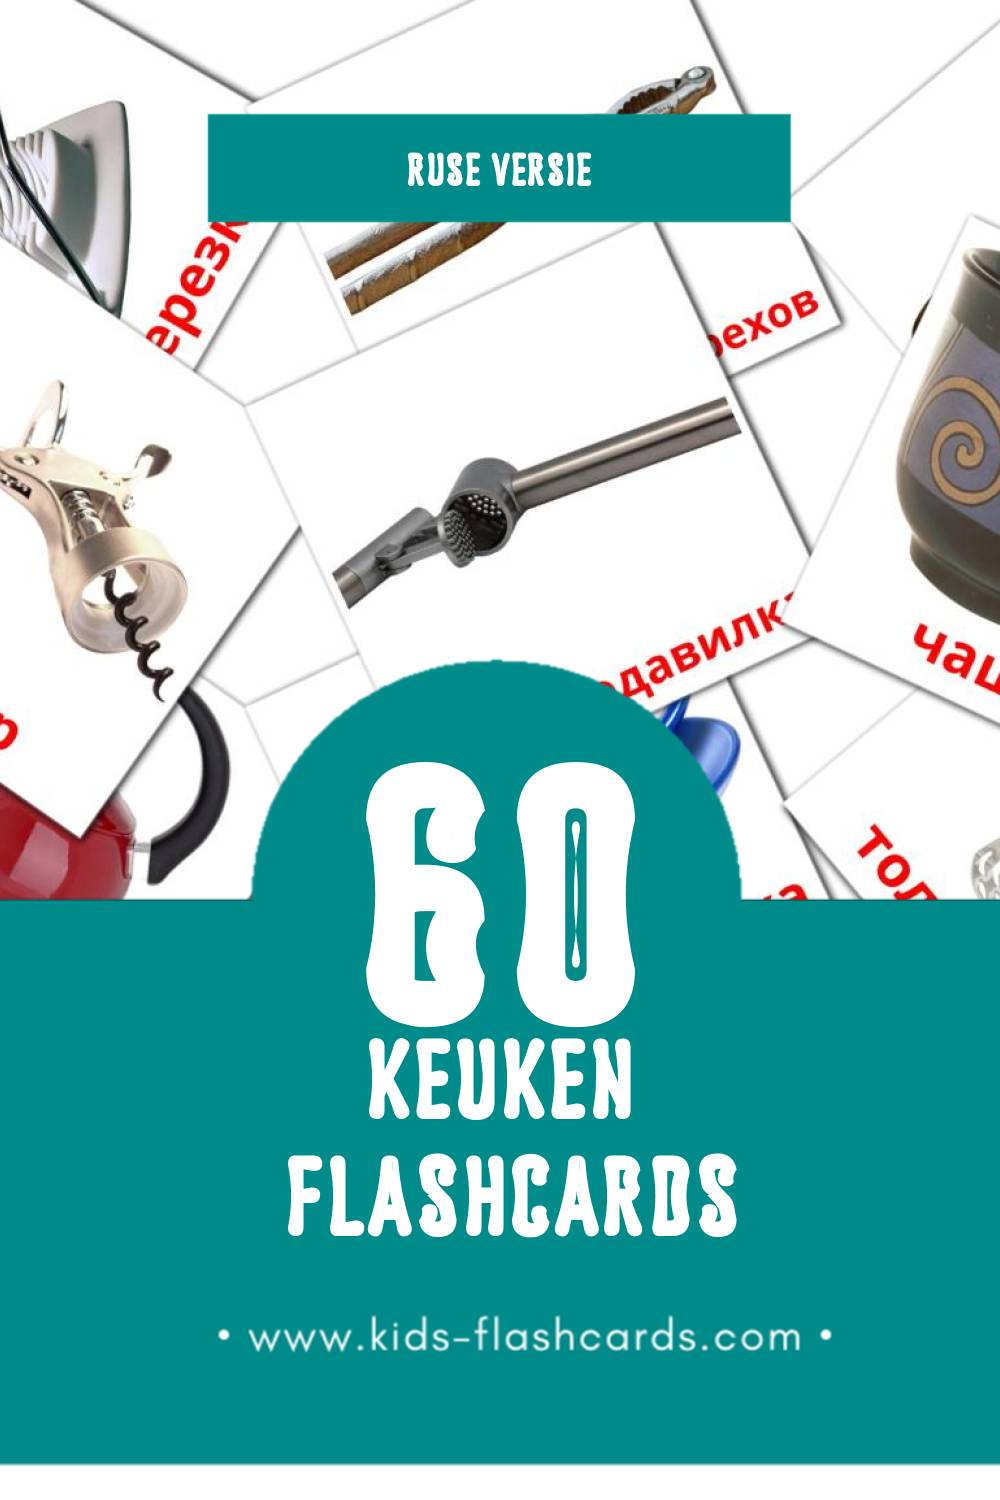 Visuele Кухня Flashcards voor Kleuters (60 kaarten in het Rus)